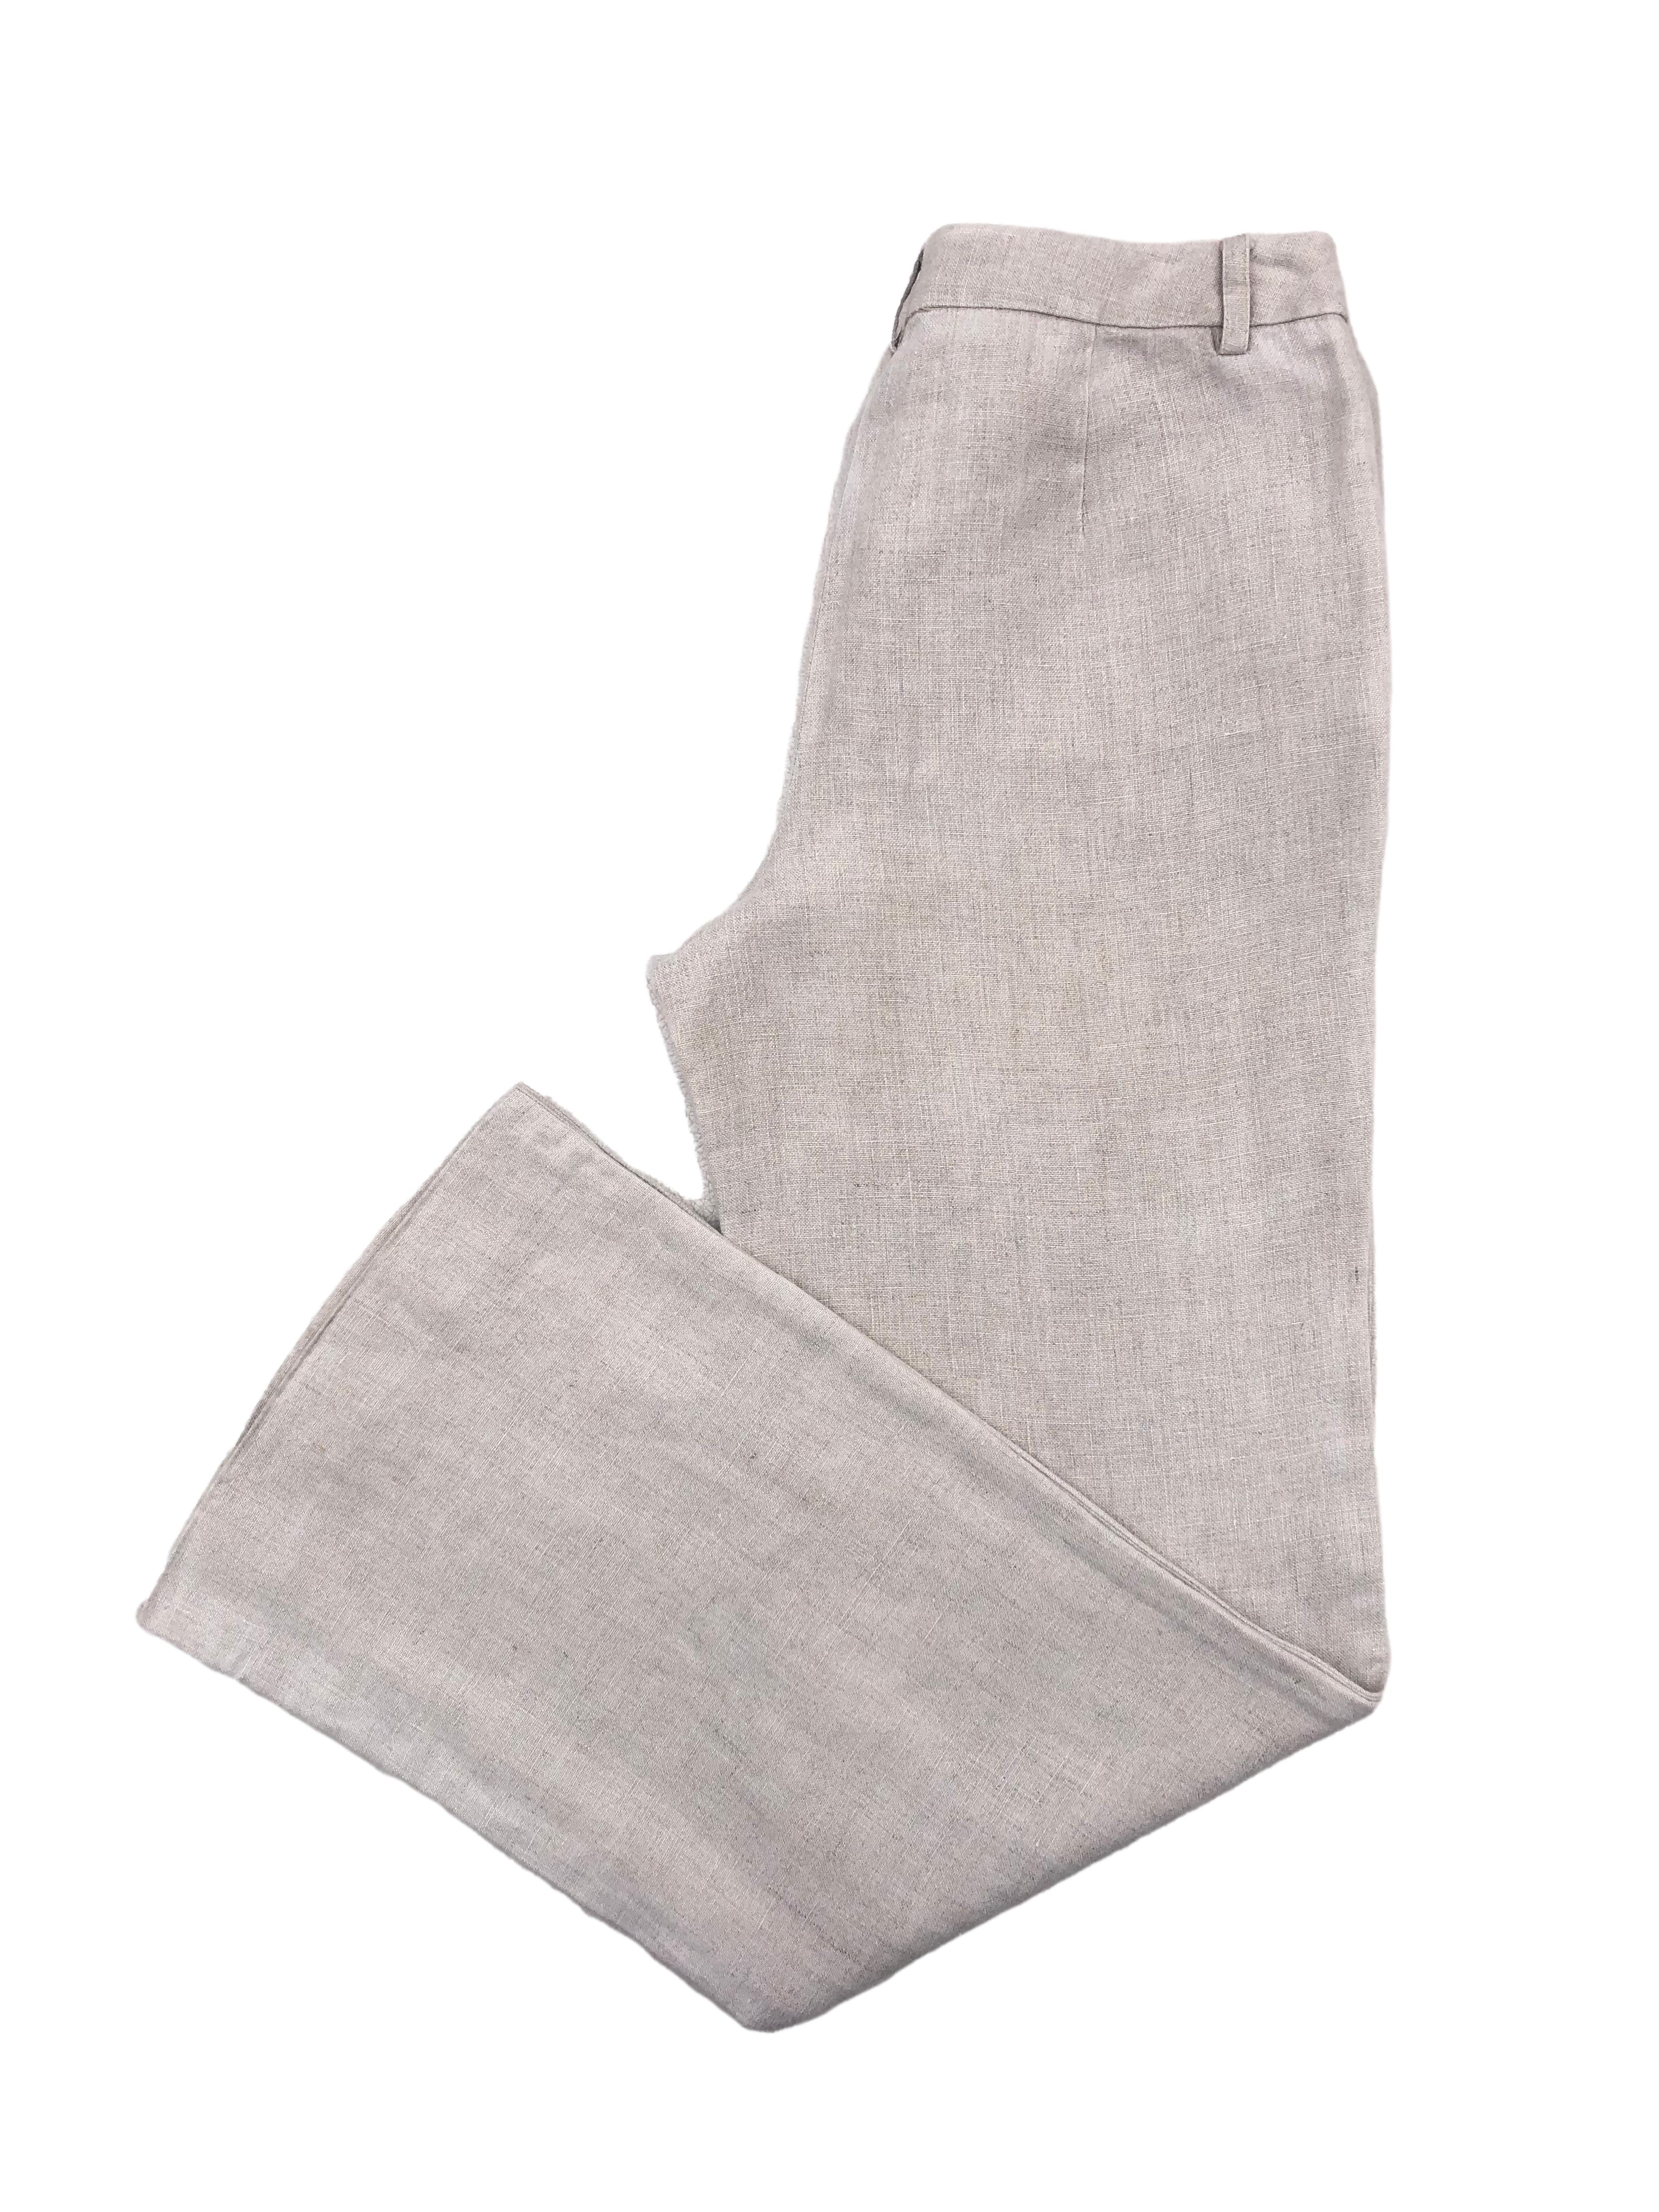 Pantalón Kenneth Cole recto de tiro alto , tela 100% lino con bolsillos laterales. Cintura 78 cm, Largo 106 cm.